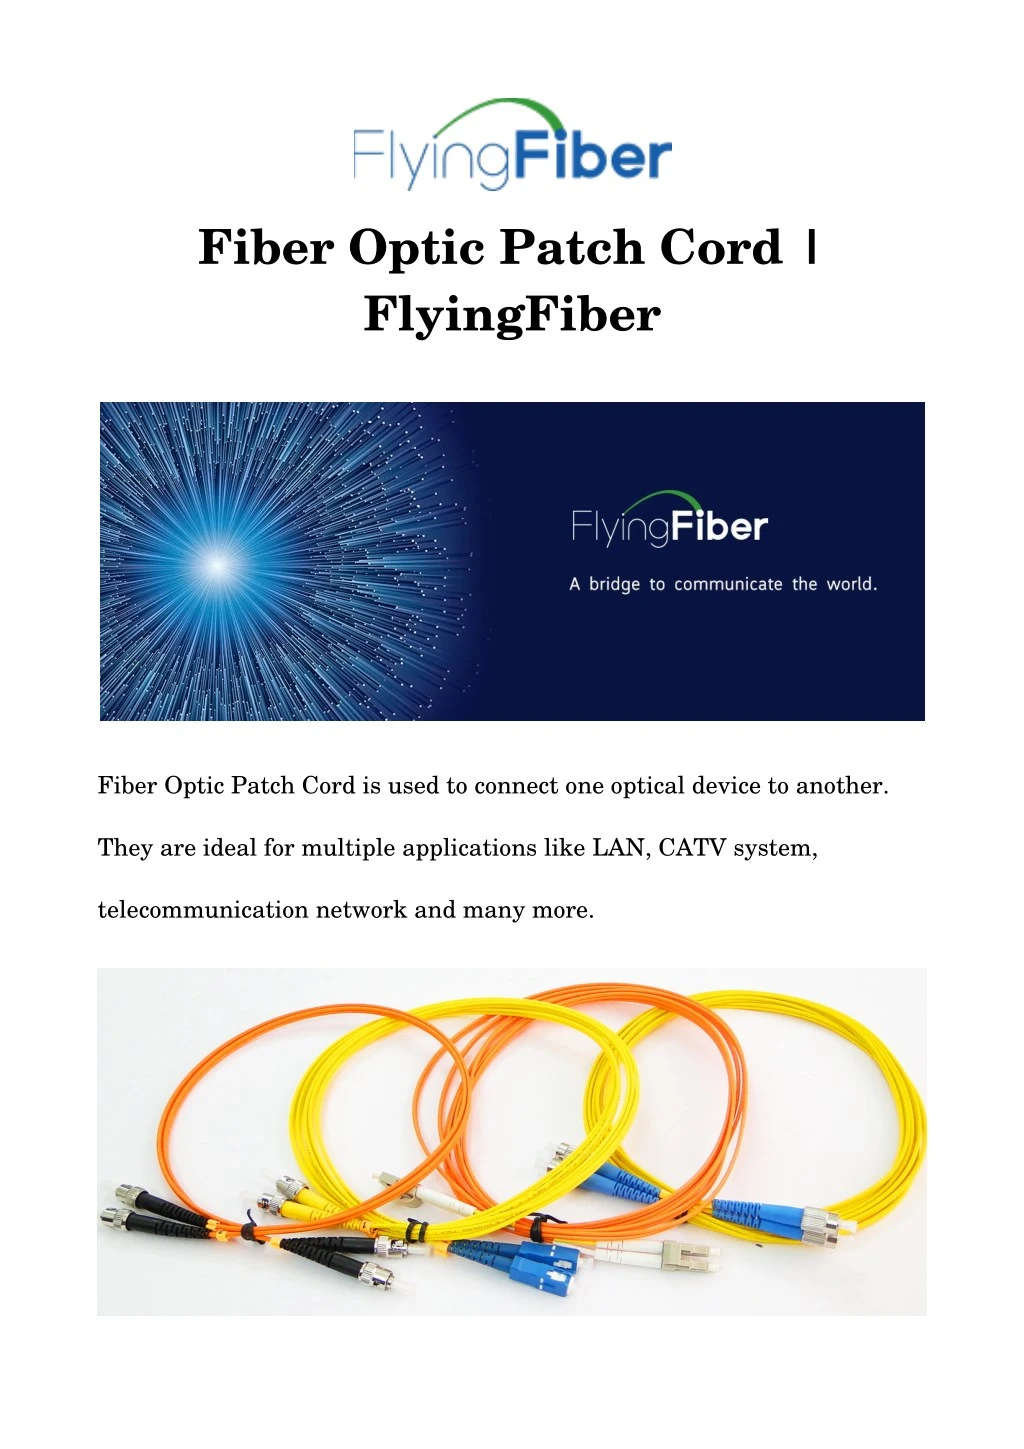 fiber optic patch cord flyingfiber